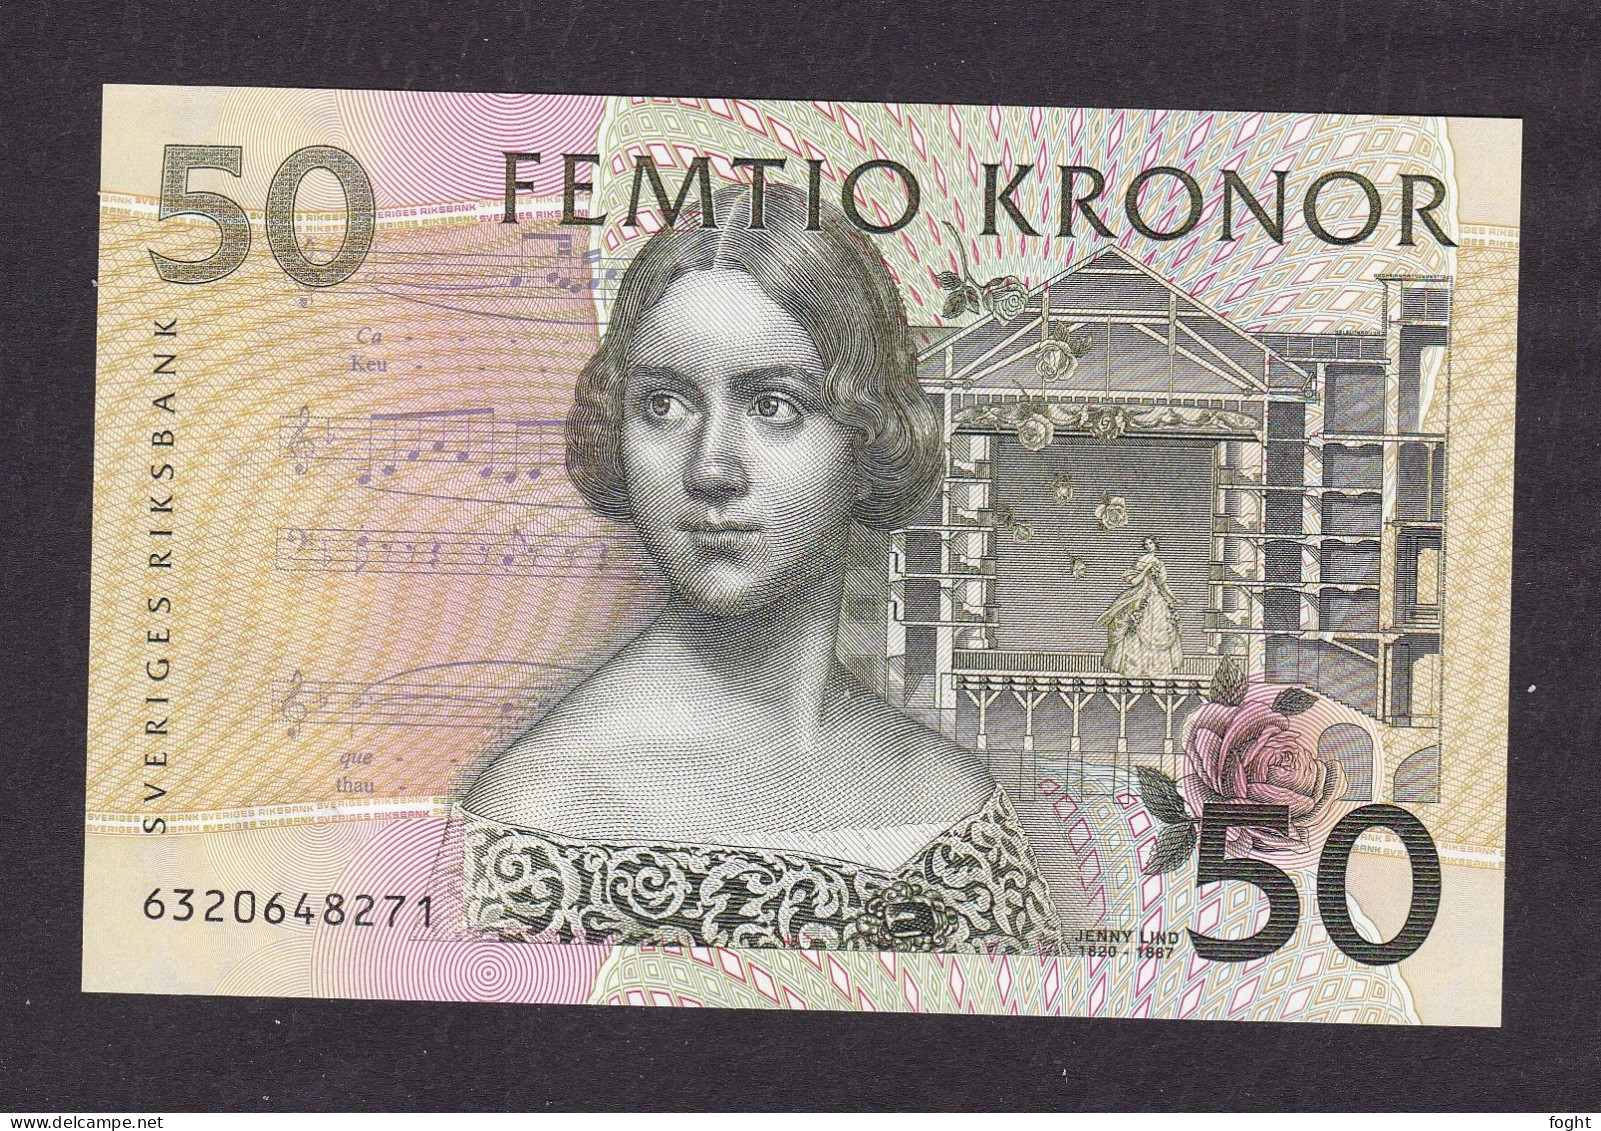 (199)6 Sweden Sveriges Riksbank Banknote 50 Kronor,P#62A - Sweden